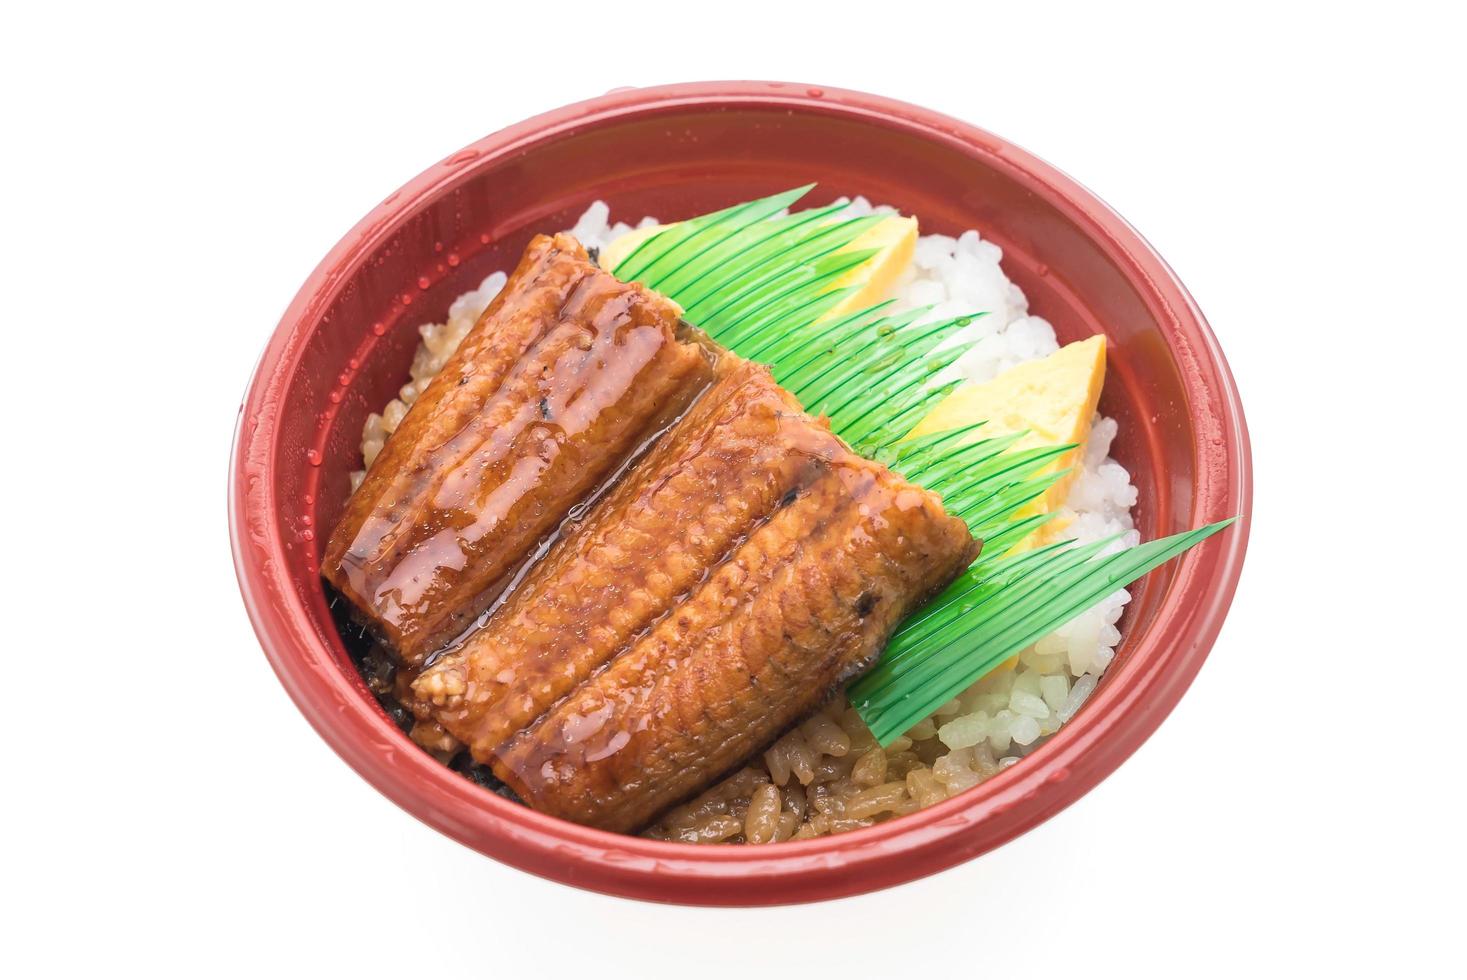 comida japonesa en un tazón foto